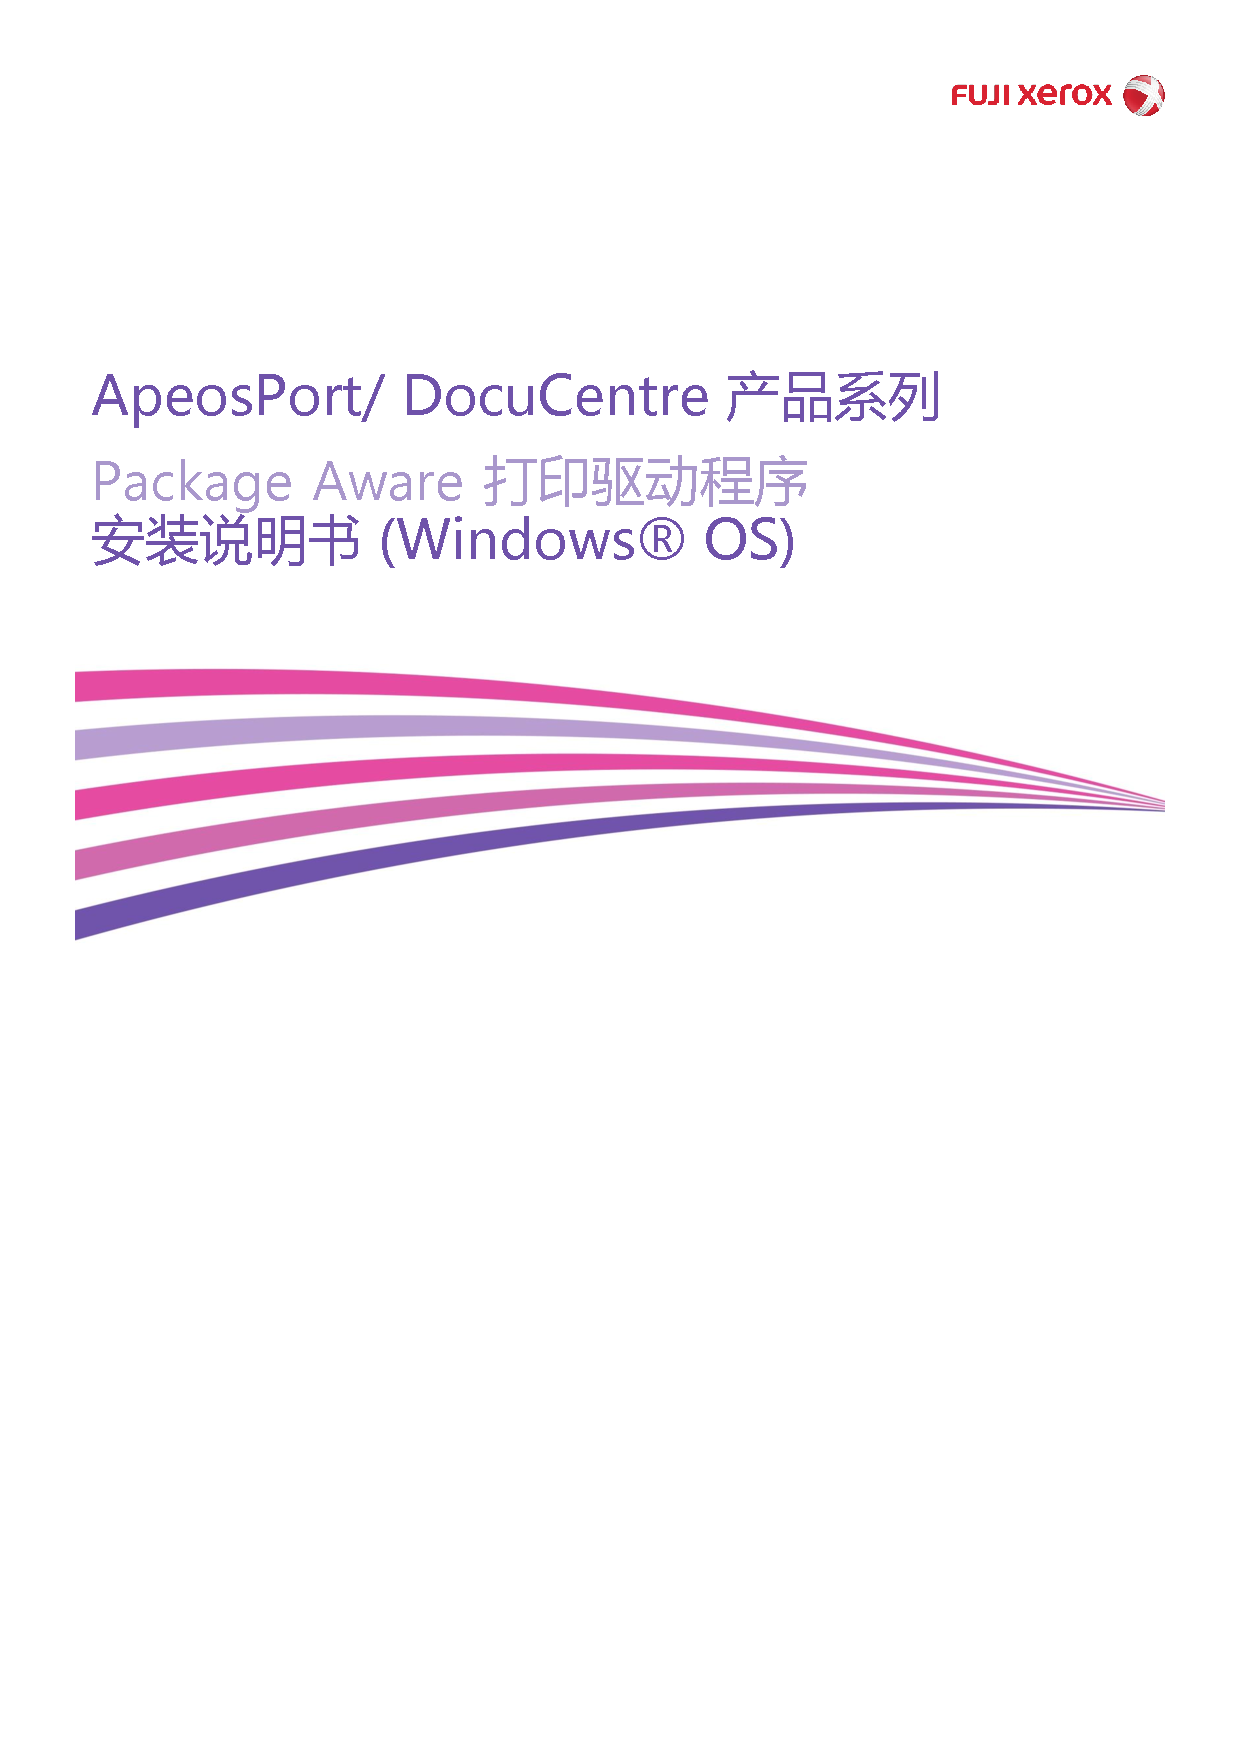 富士施乐 Fuji Xerox ApeosPort Package Aware打印驱动程序 安装说明 封面